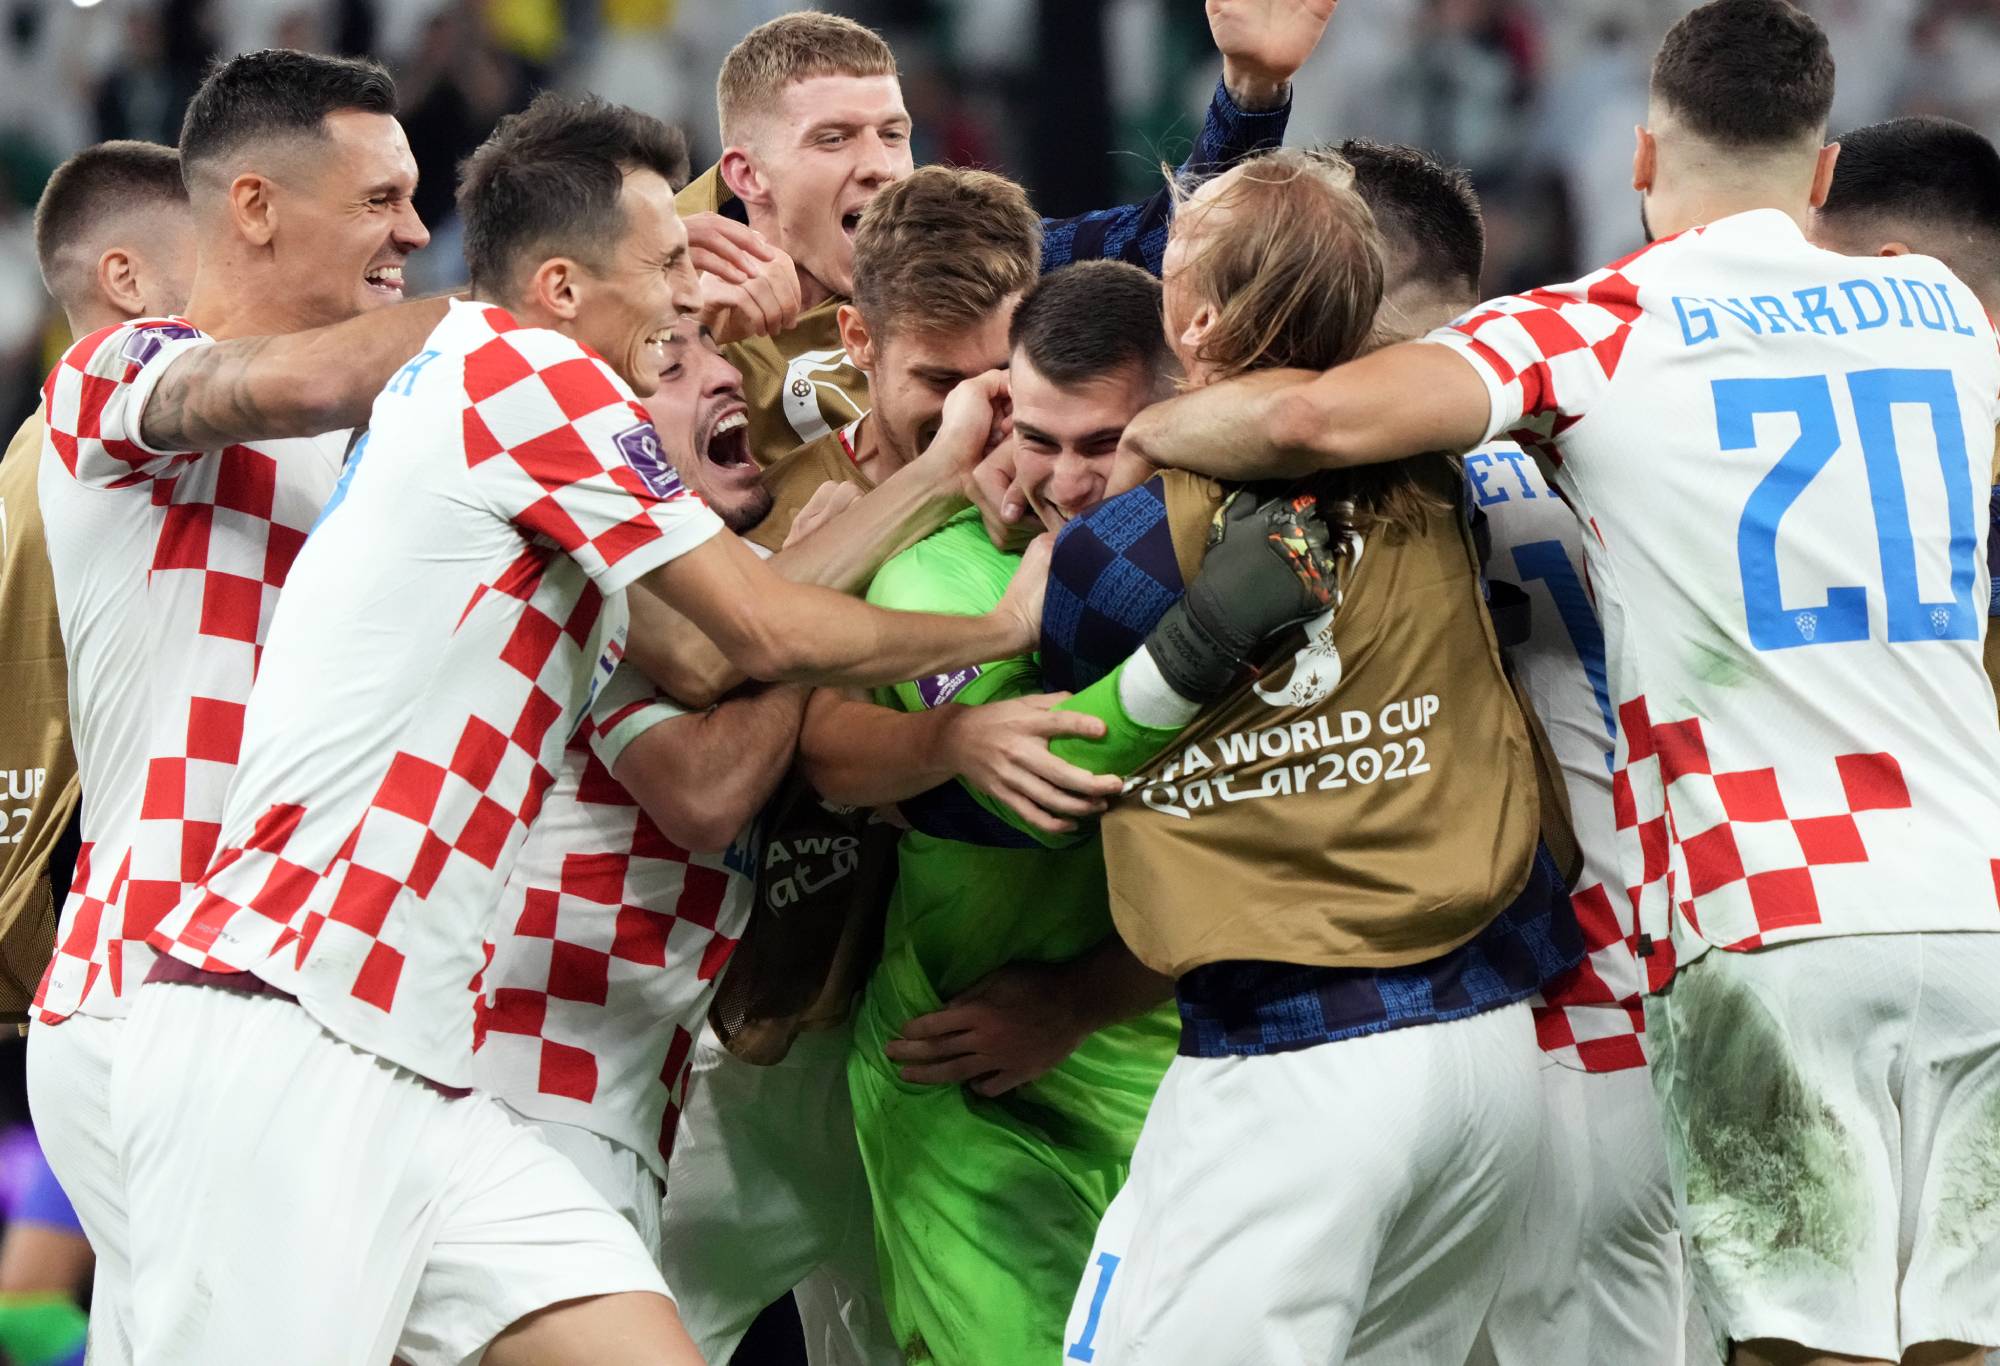 Brasil OUT dari Piala Dunia setelah Kroasia mengejutkan favorit trofi untuk menutup comeback dramatis dalam adu penalti